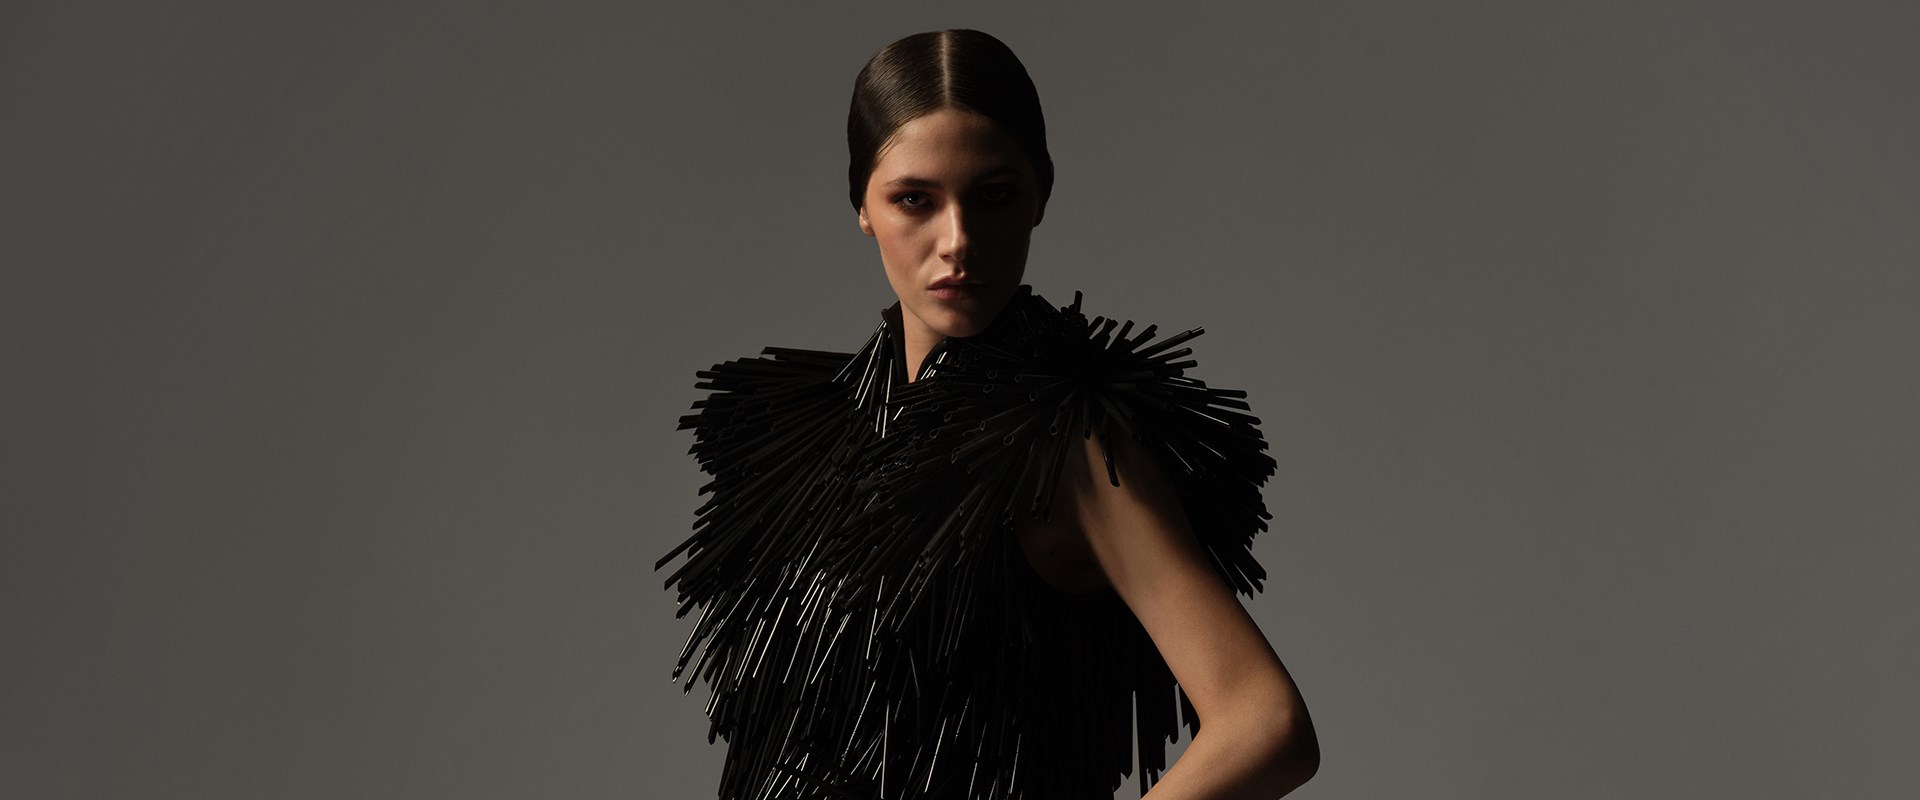 Beyond the little black dress: 'Gabrielle Chanel – Fashion